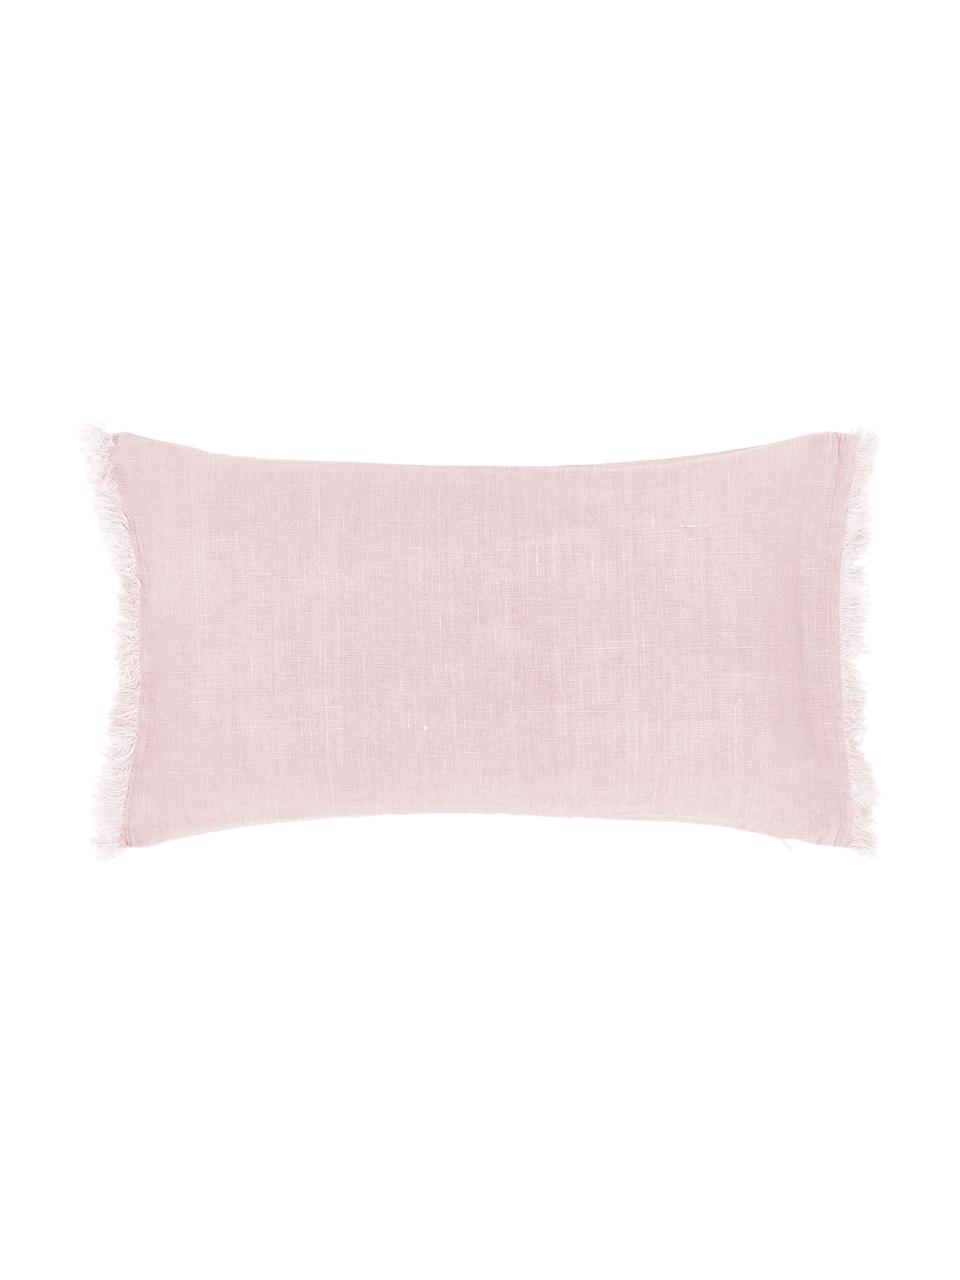 Linnen kussenhoes Luana in roze met franjes, 100% linnen, Oudroze, 30 x 50 cm